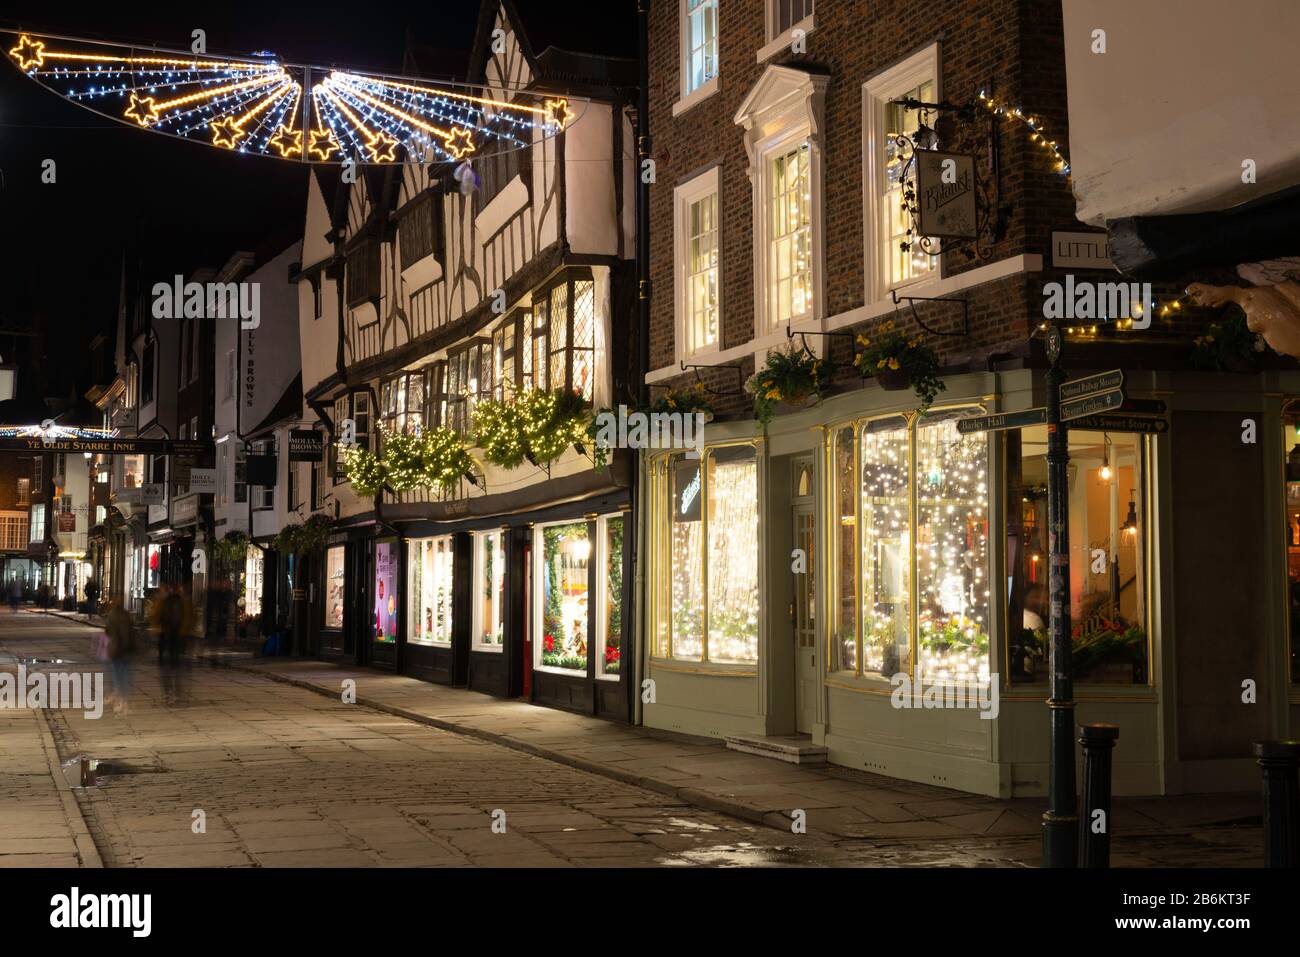 StoneGate, York zu Weihnachten: Eine der Haupteinkaufsstraßen Yorks nachts während der Festtage Stockfoto